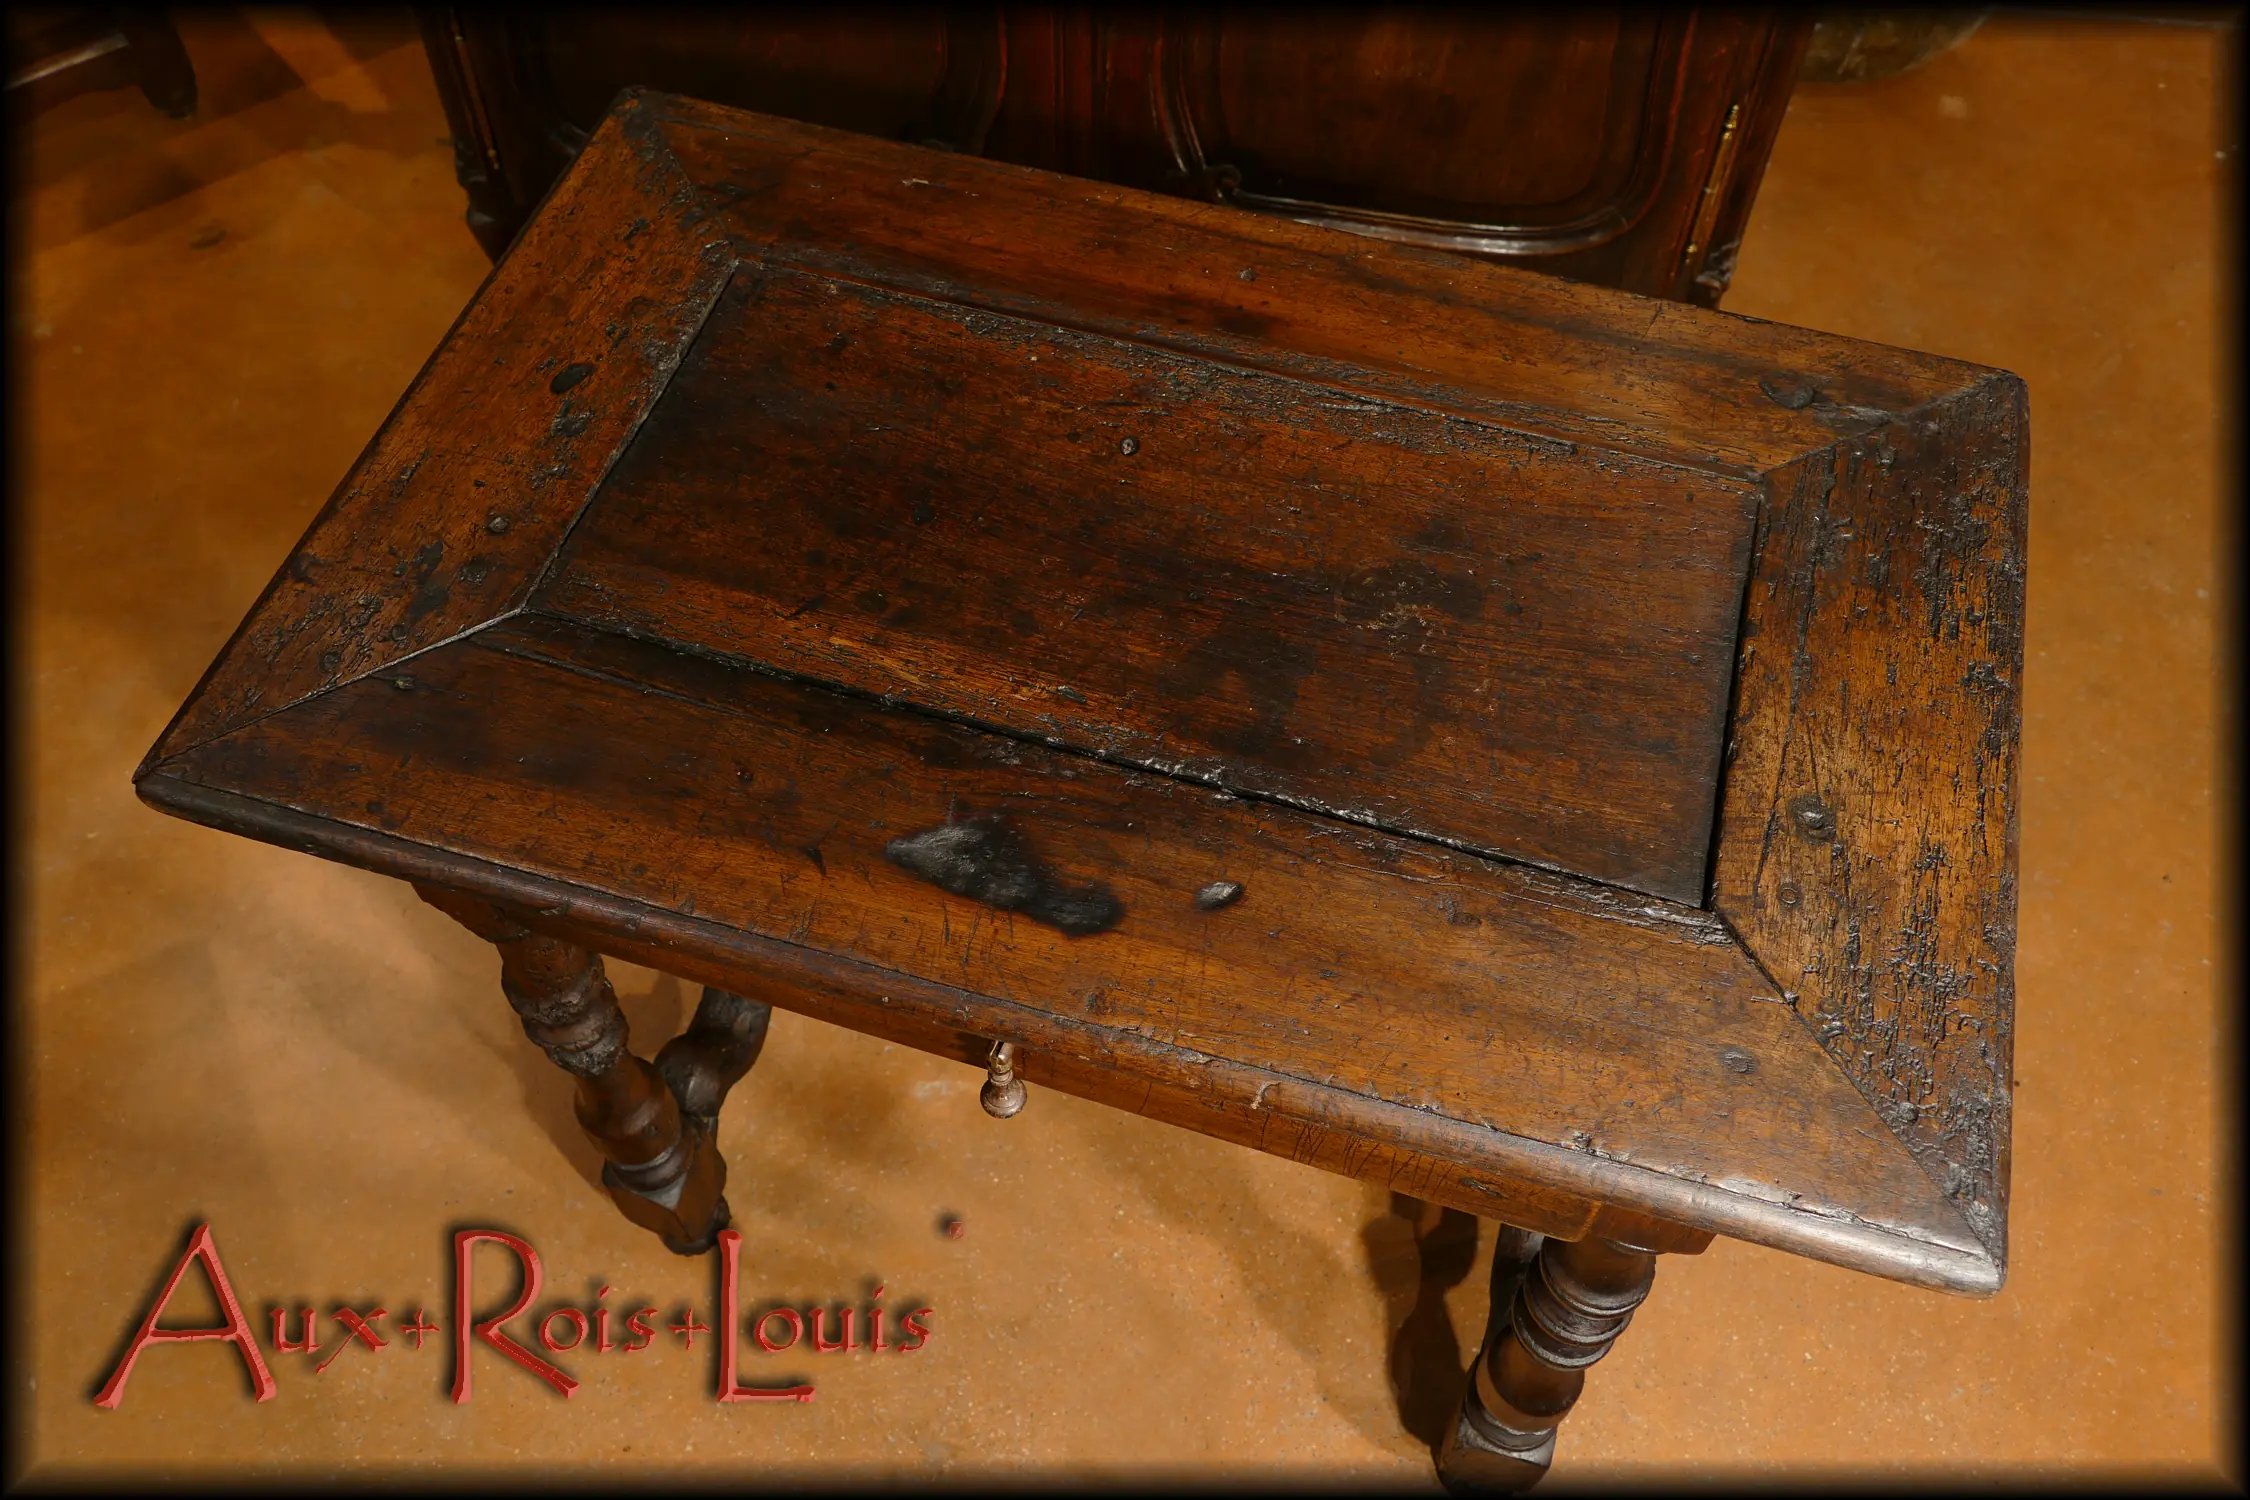 Le plateau de cette table à poser dévolue à recevoir autrefois le coffre écritoire qui contenait plumes, encre et papier, a été assemblé par encadrement.